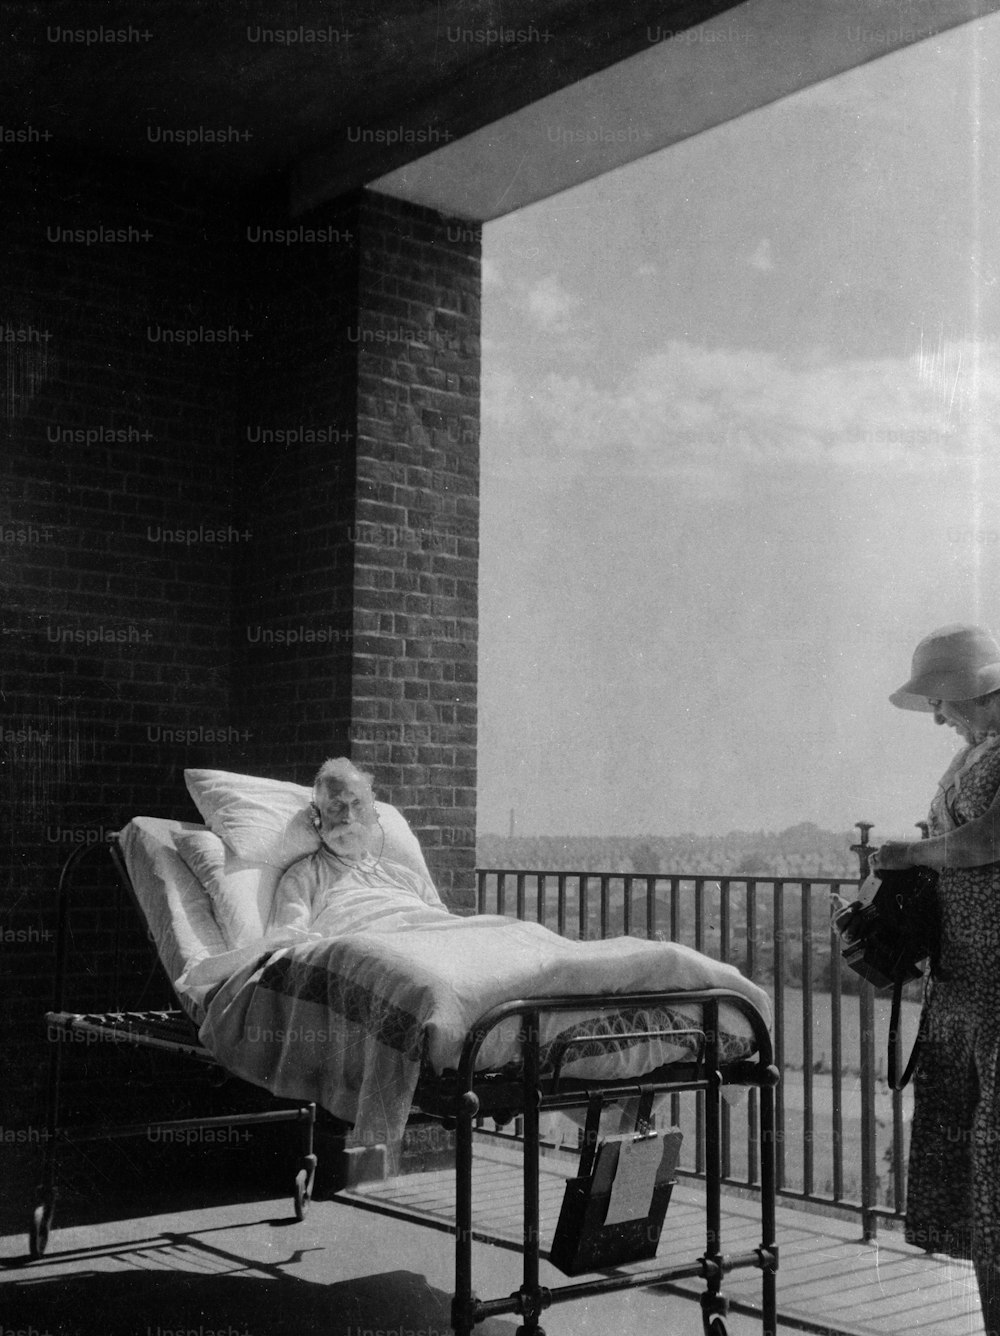 Vers 1930 : Un patient âgé est en convalescence avec son lit d’hôpital sur un balcon, afin d’accélérer son rétablissement avec de l’air frais et sain.  (Photo de Chaloner Woods/Getty Images)